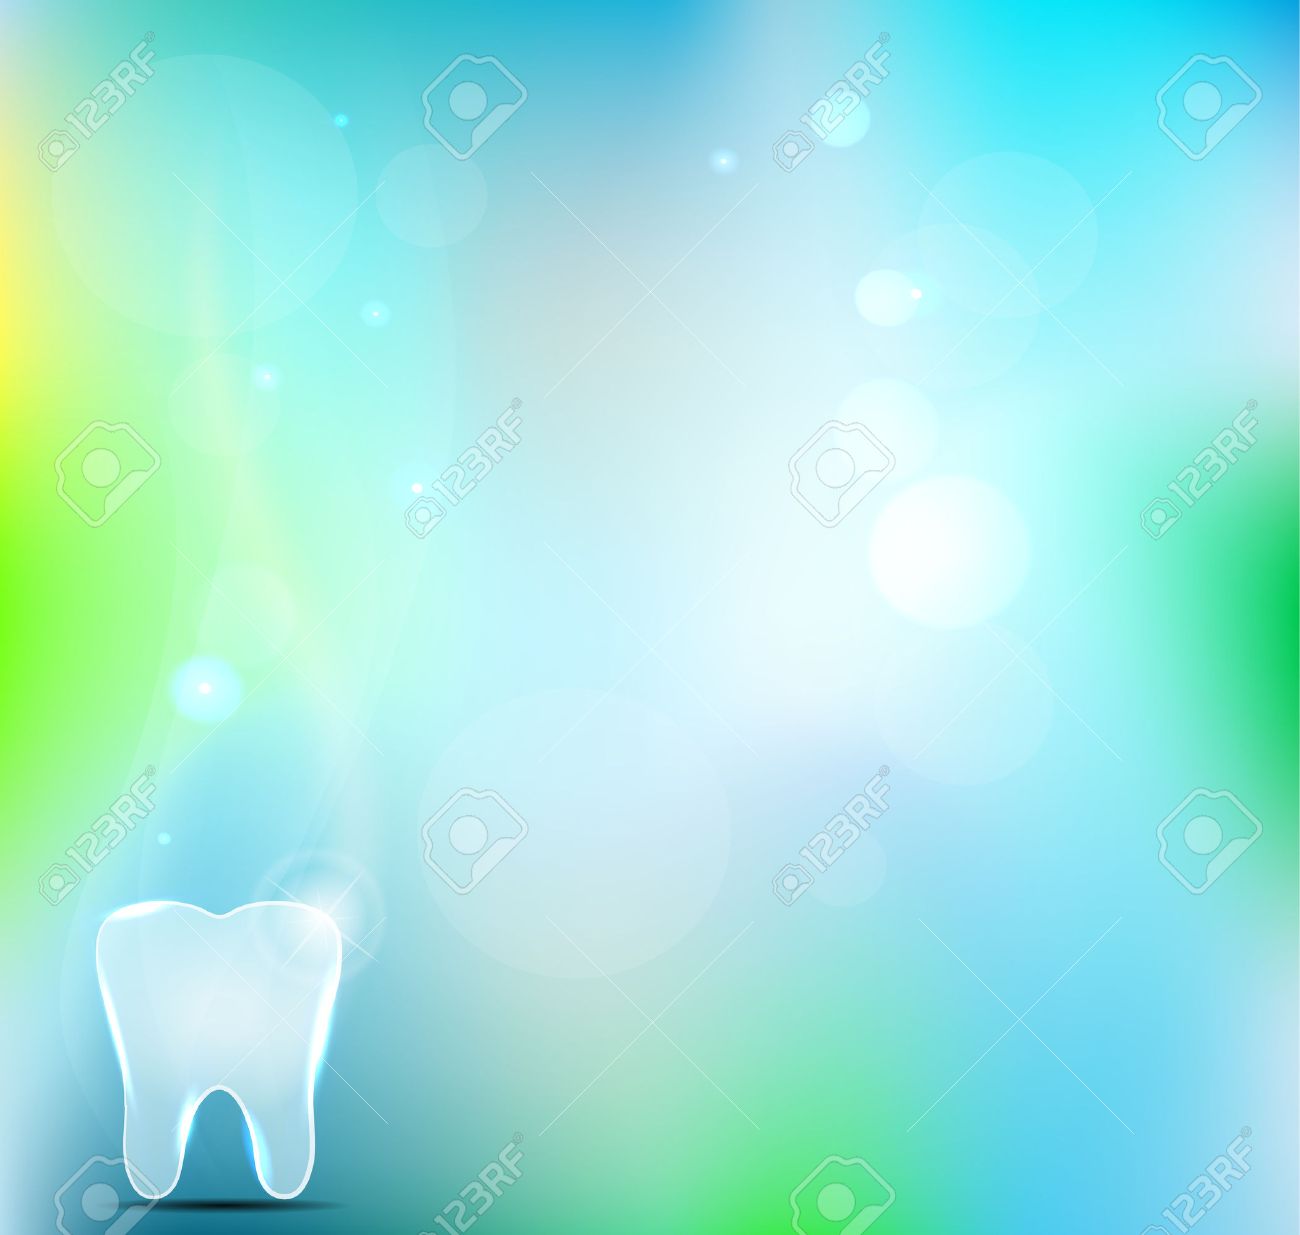 10+] Dental Backgrounds - WallpaperSafari